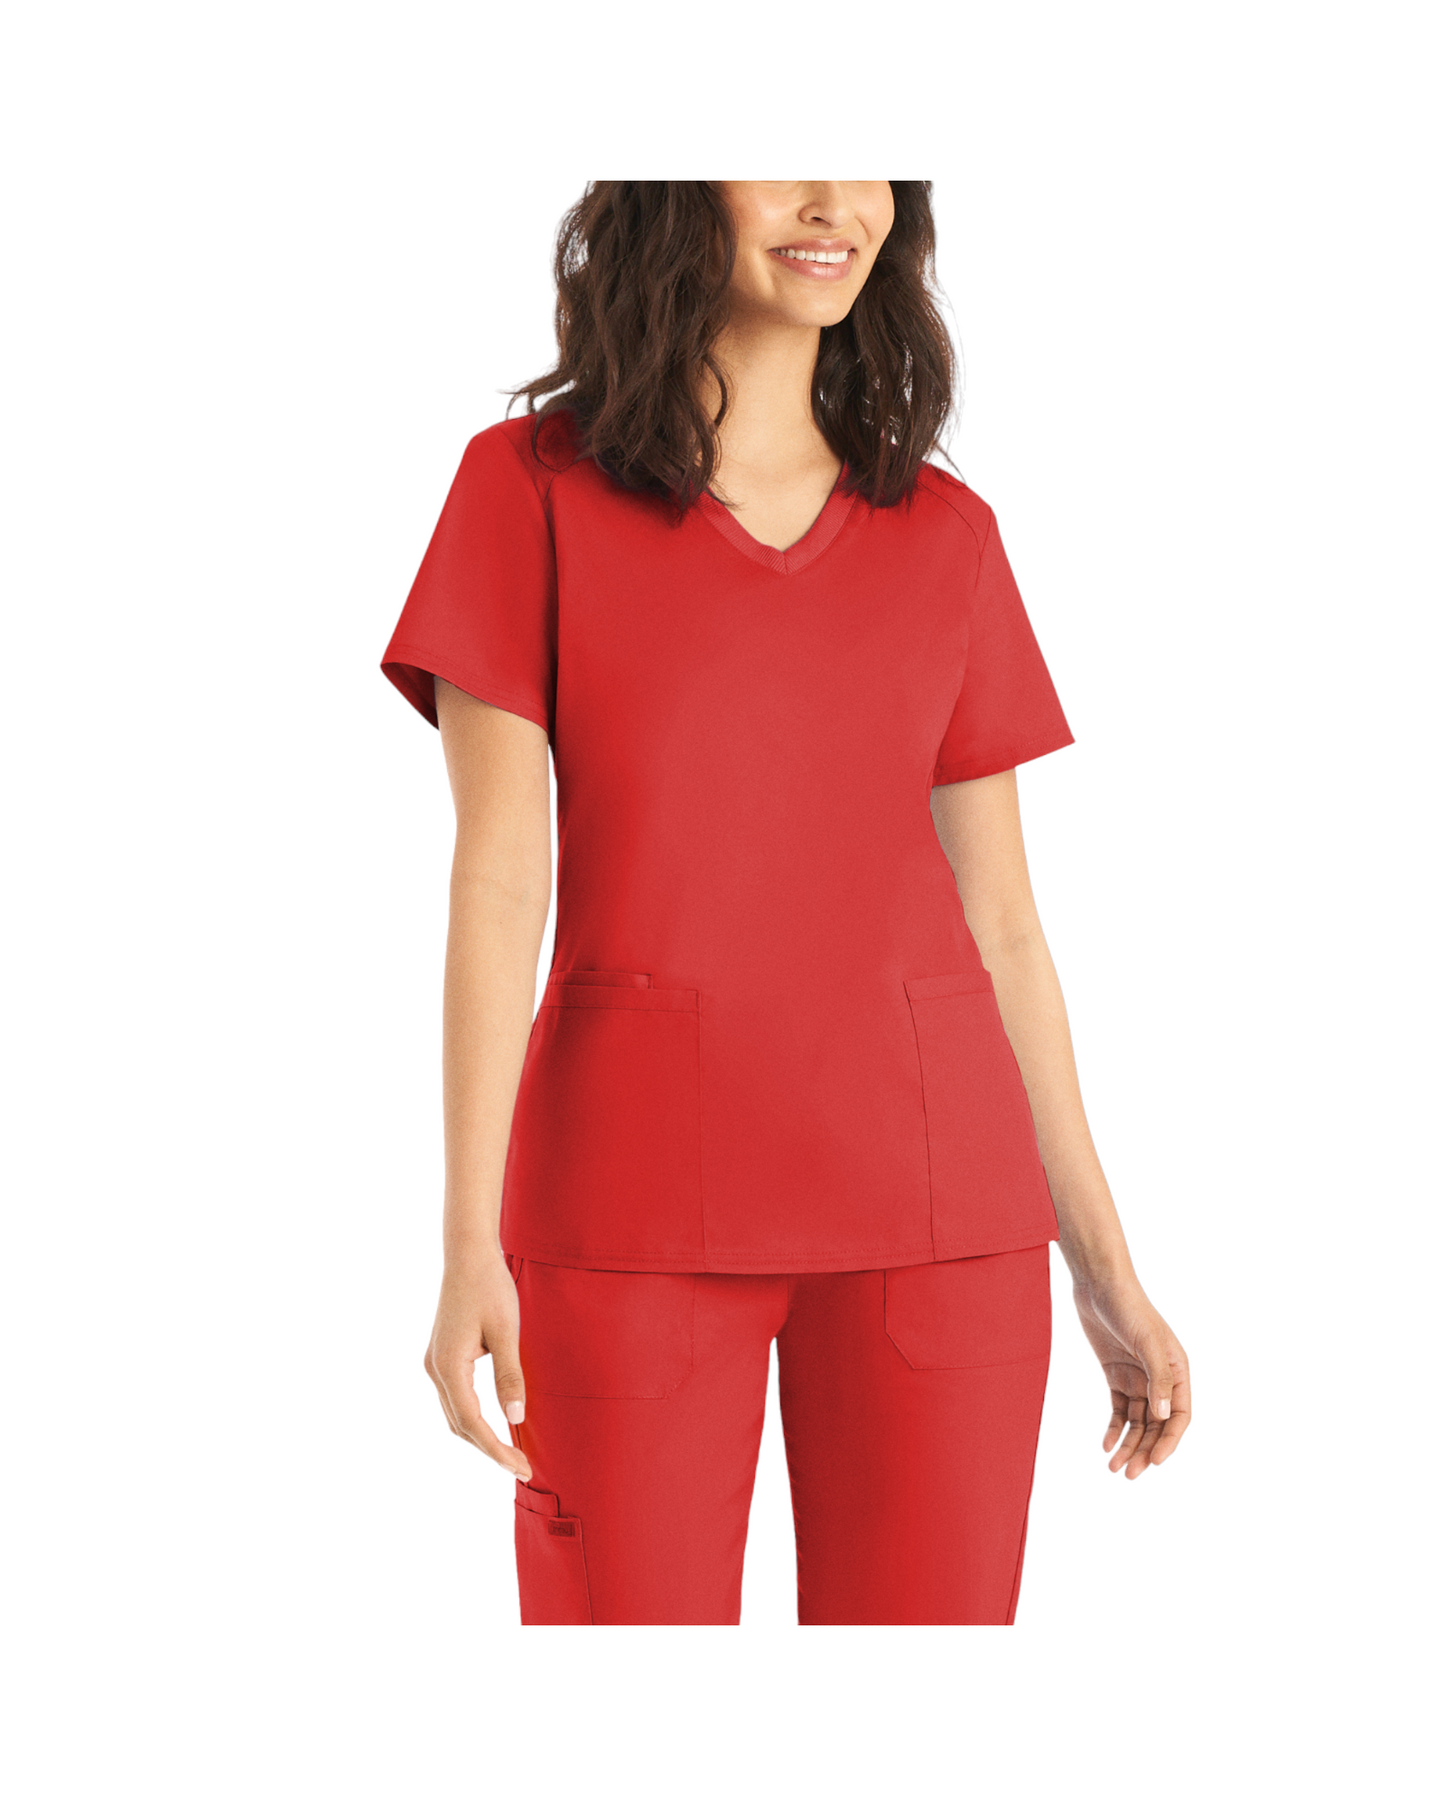 Uniforme de marque landau pour femmes. Travailleuses du domaine de la santé. LT105 couleur True Red, col en V.